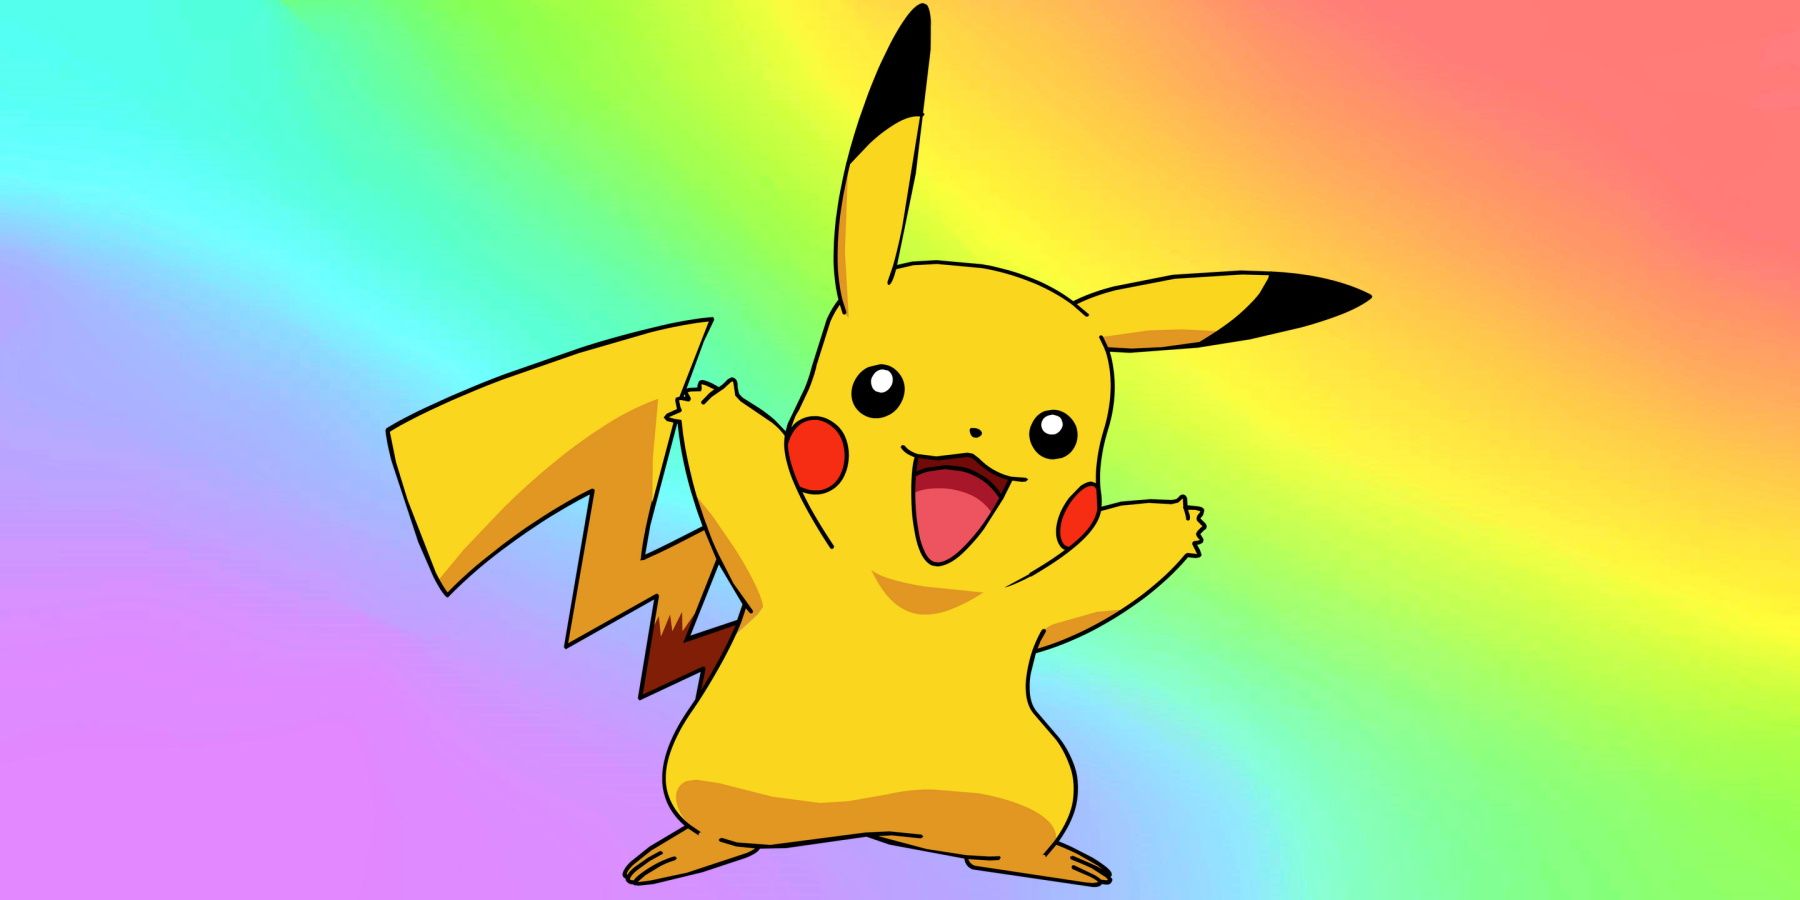 Rainbow Pikachu Pokemon Go